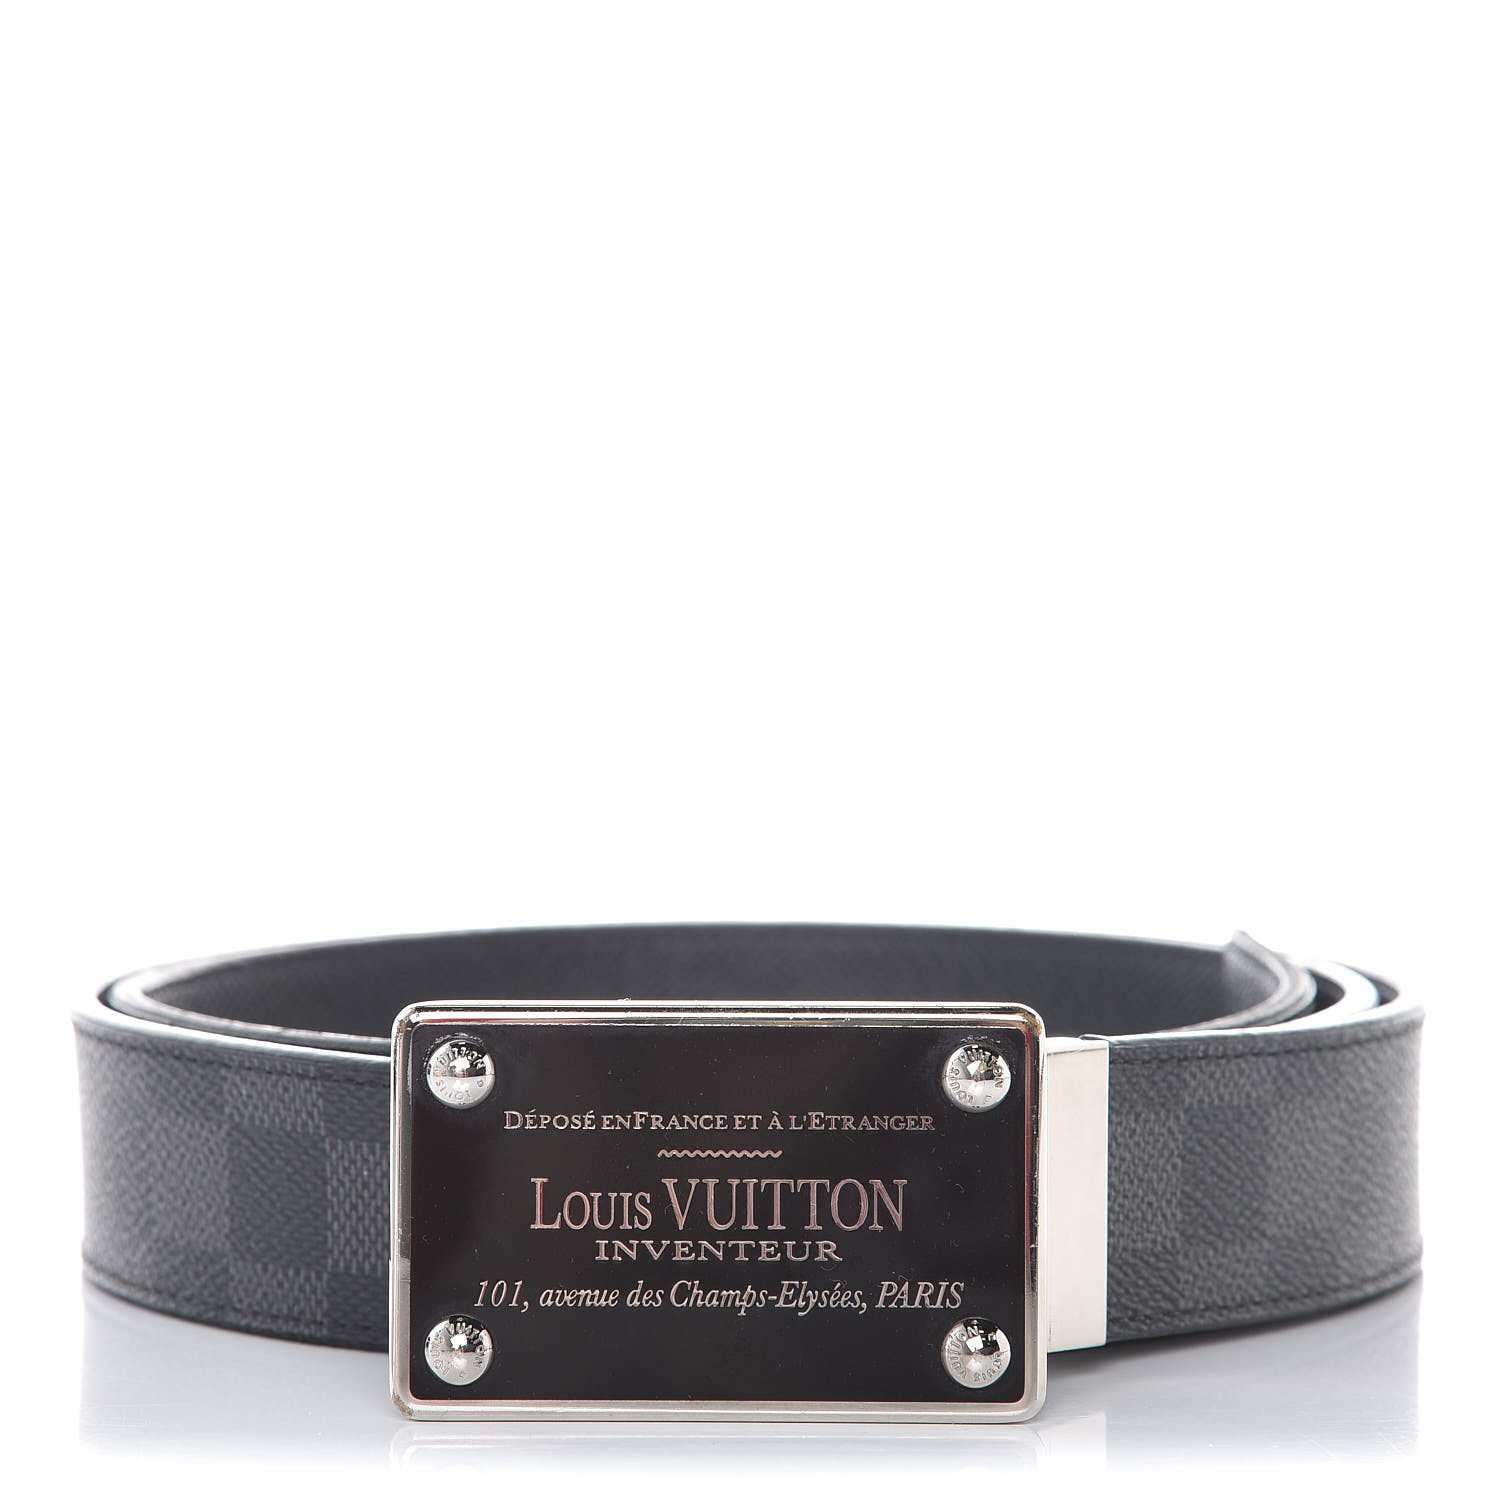 LV Reversible Belt Wear and Tear : r/Louisvuitton